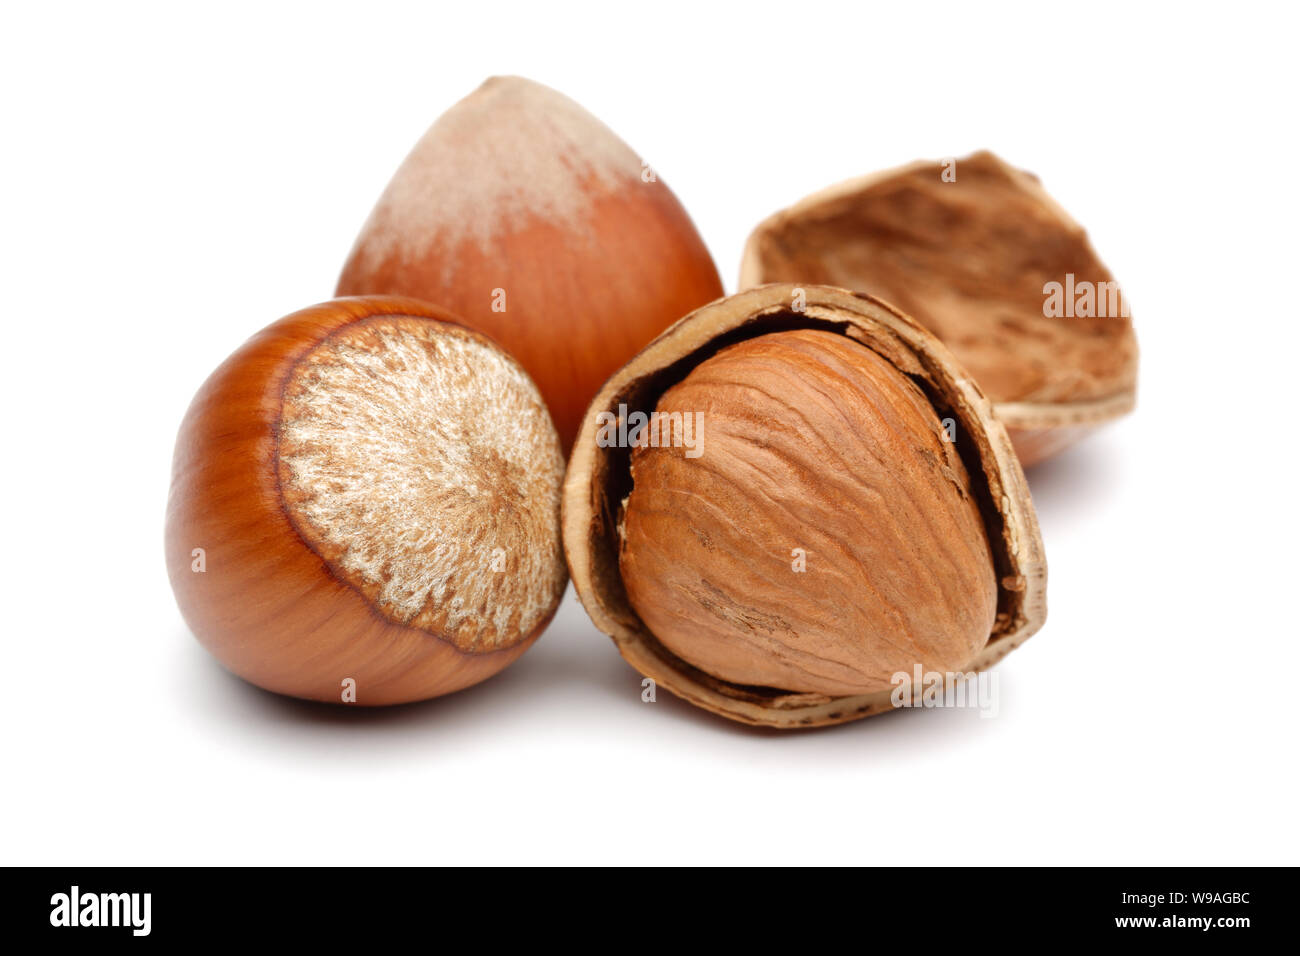 Group of hazelnuts isolated on white background Stock Photo